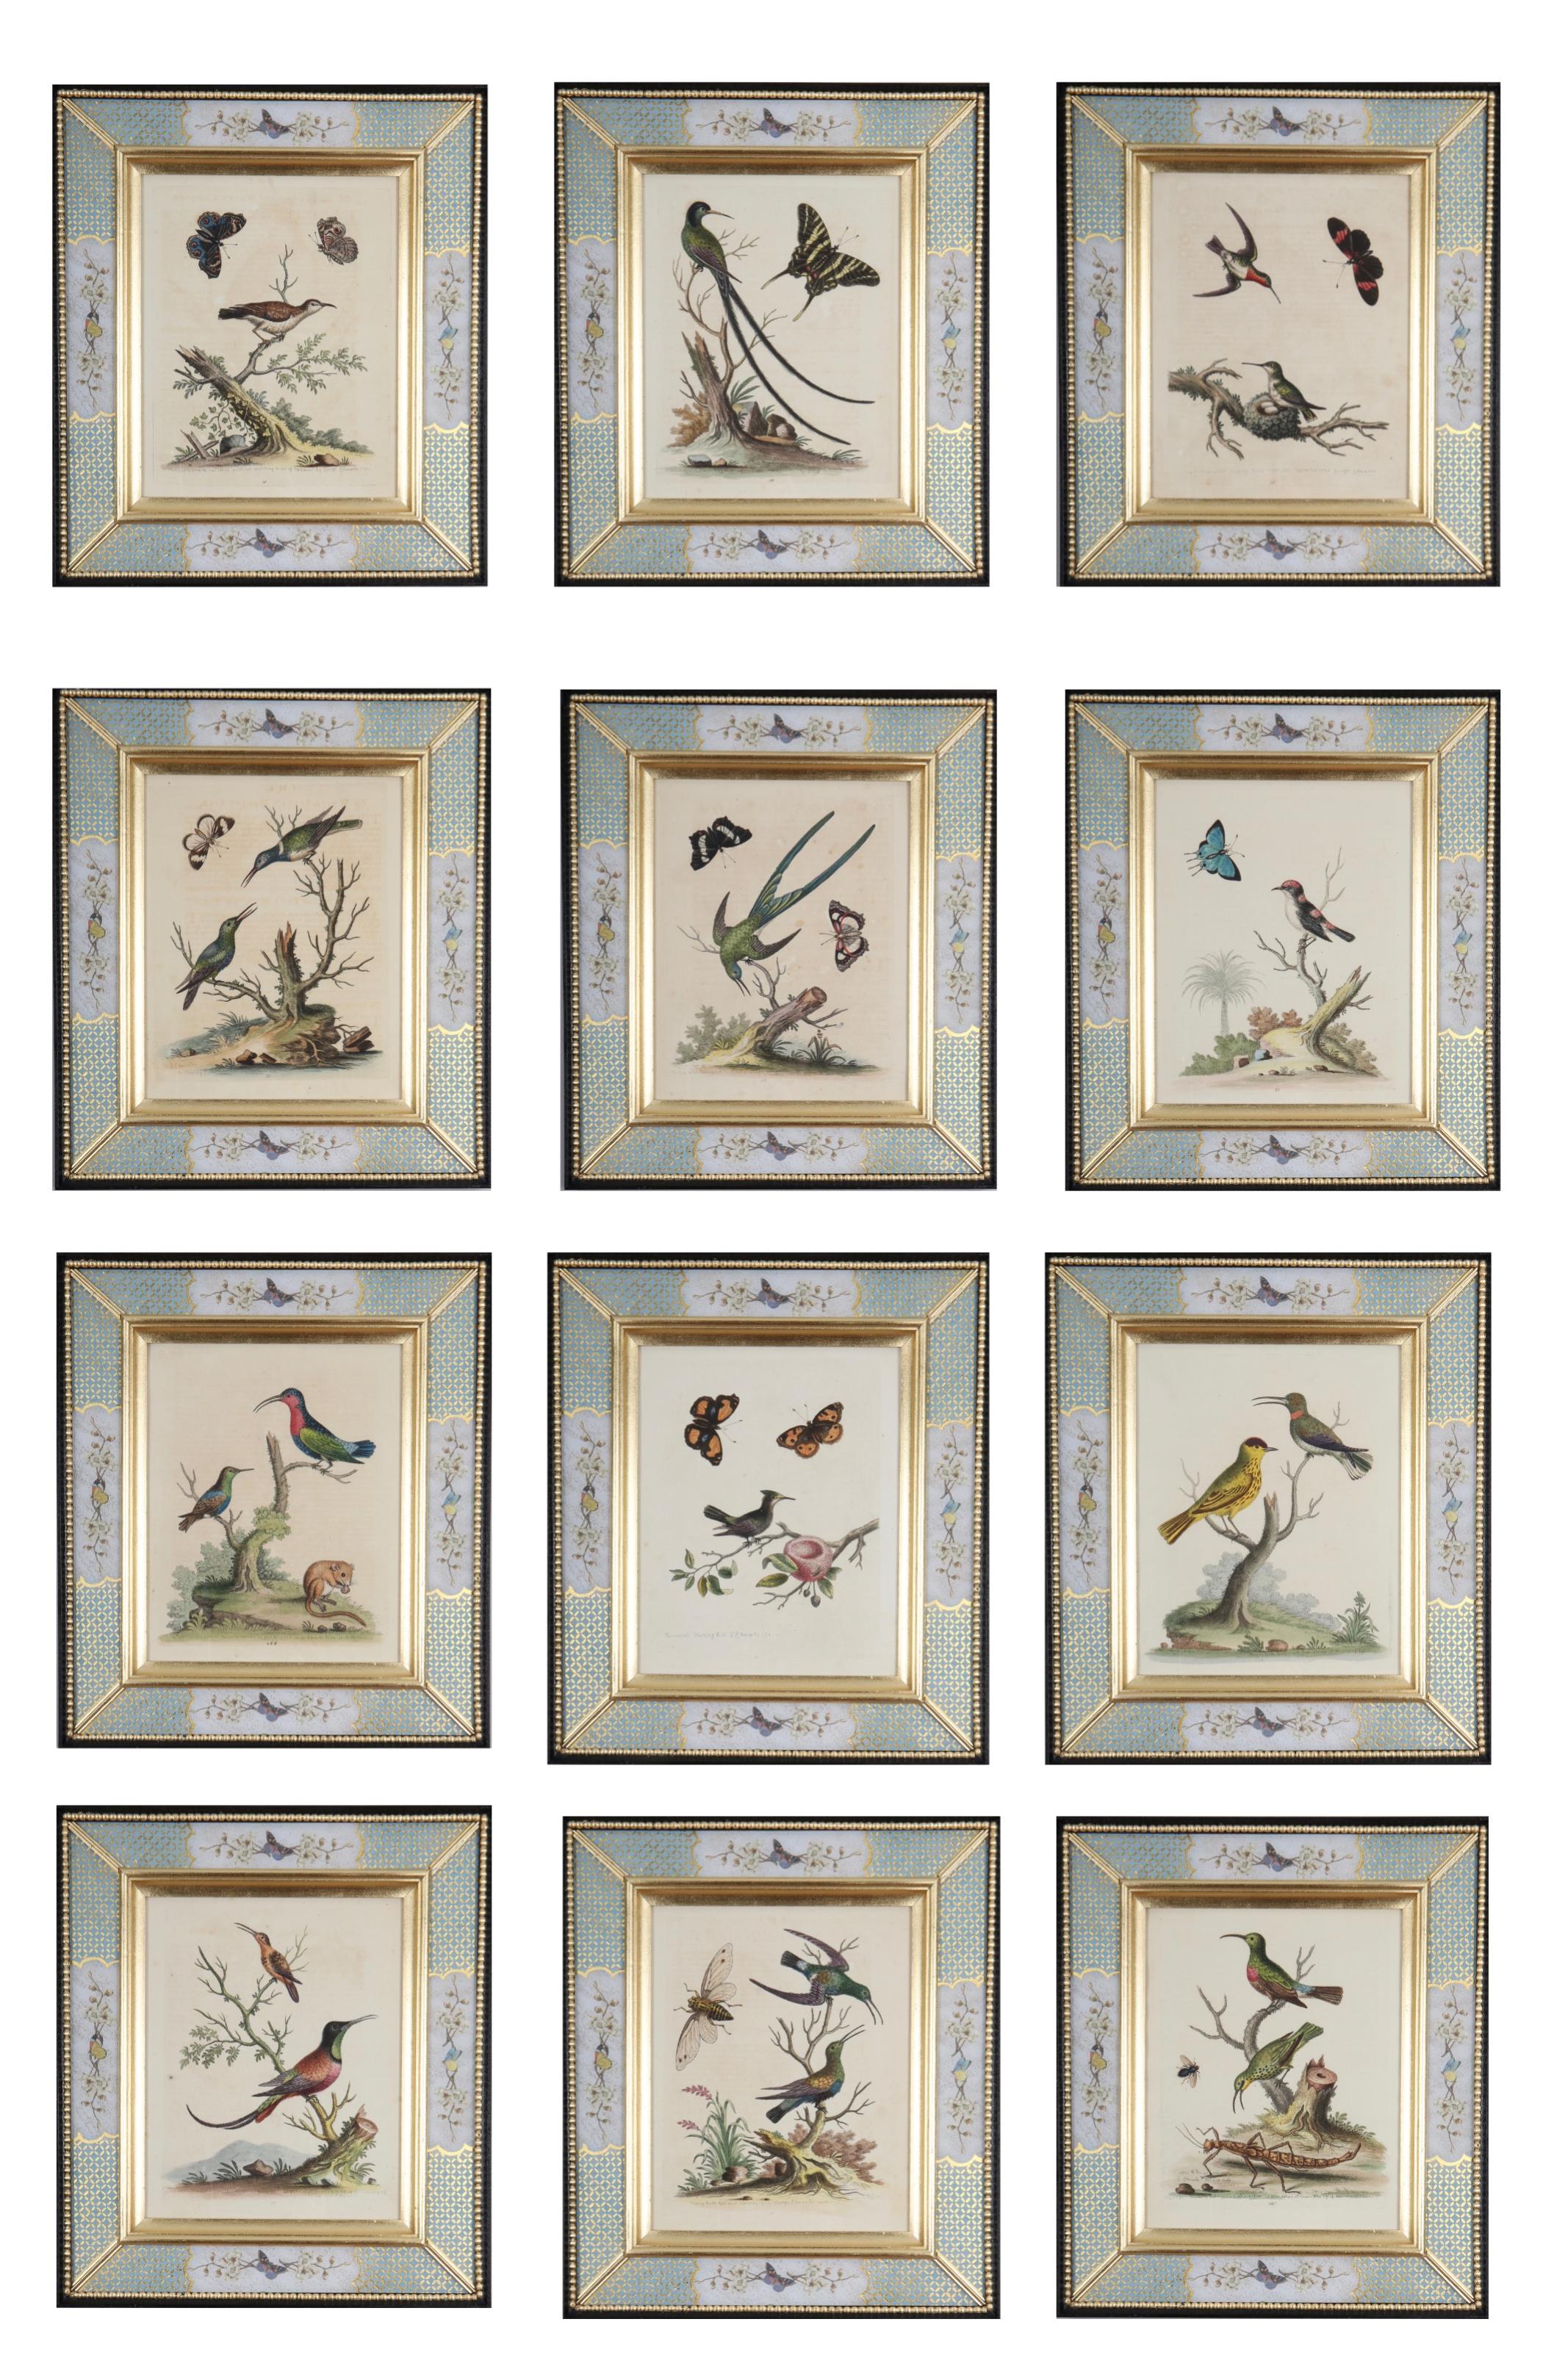 George Edwards : "A History of Uncommon Birds", 1749-1761.

Éminent naturaliste et ornithologue anglais, George Edwards (1694 -1773) est surtout connu pour son ouvrage "A Natural History of Uncommon Birds", qu'il a publié entre 1743 et 1761 alors